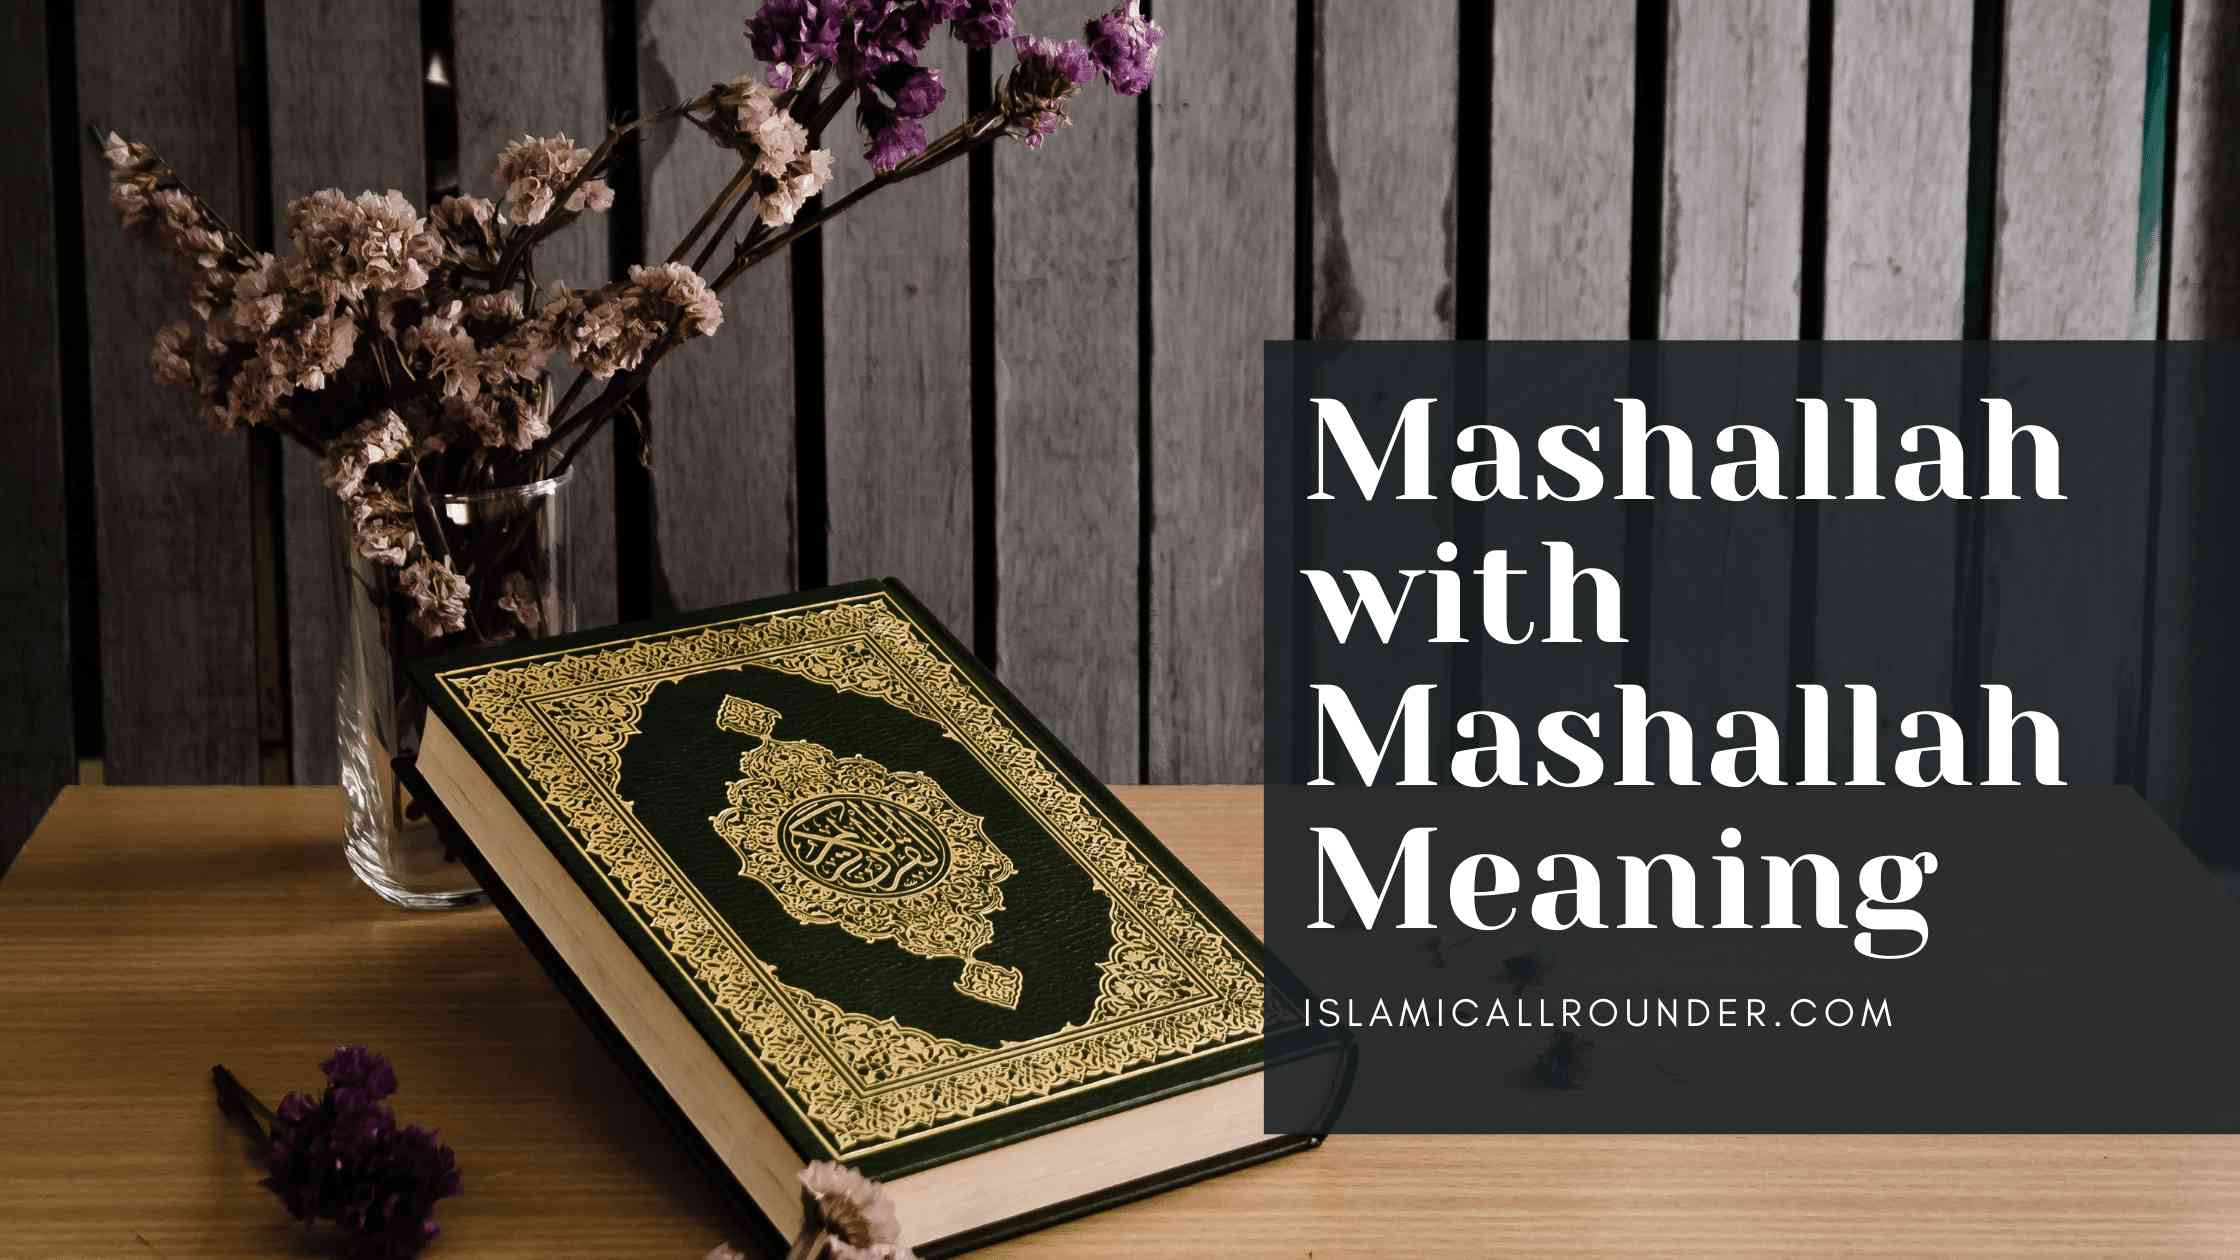 Mashallah with Mashallah Meaning